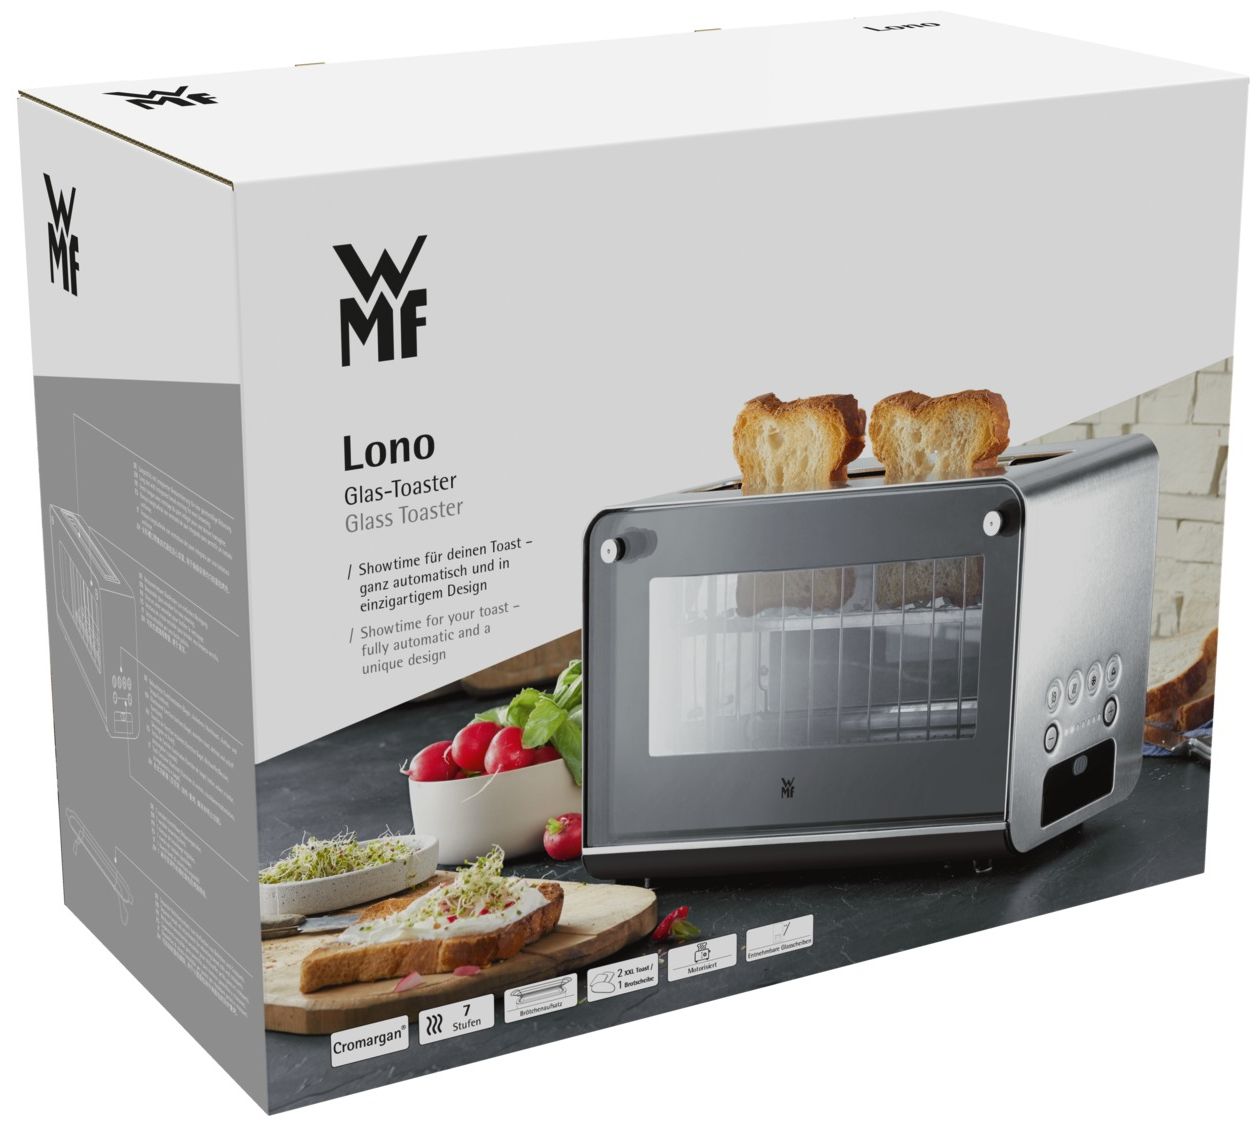 Scheibe(n) expert Toaster (Edelstahl) WMF 2 7 Lono von Stufen Technomarkt